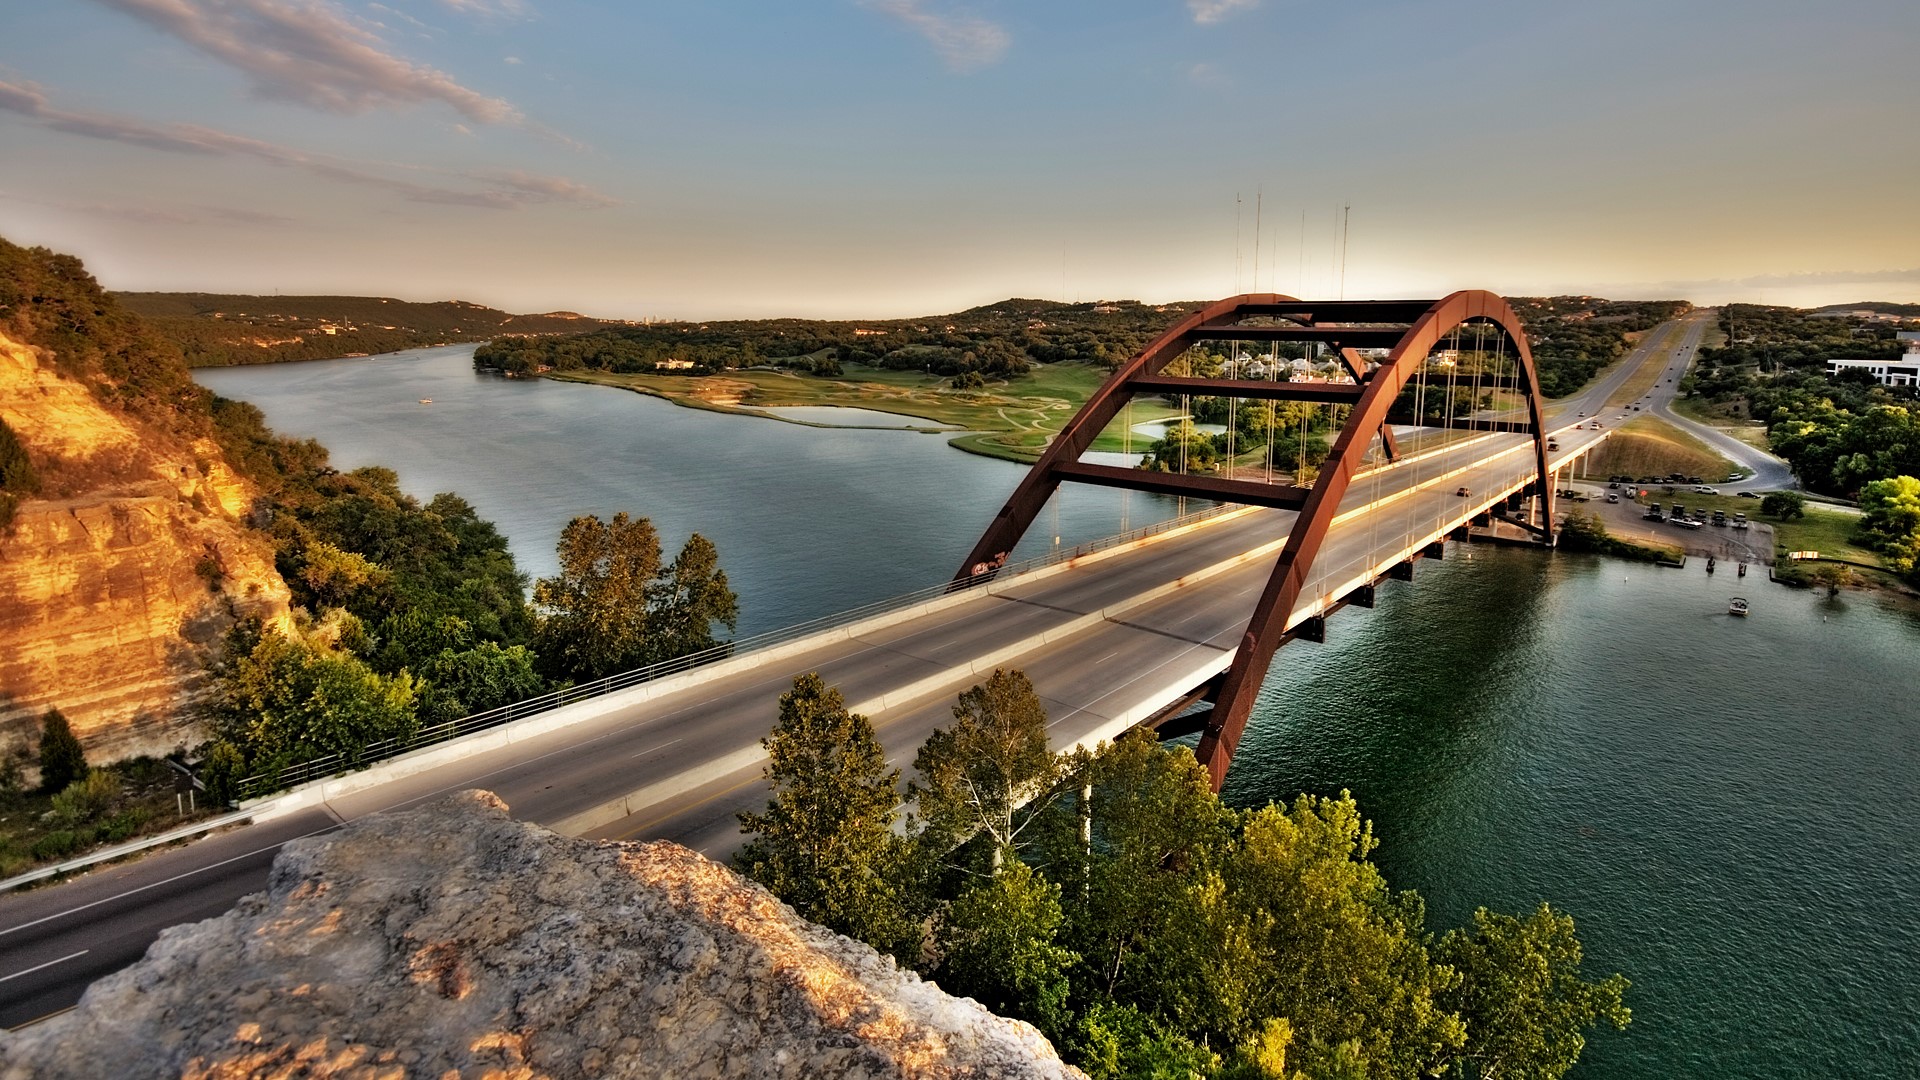 360 Bridge (Pennybacker) on Capital of Texas Highway and Lake Austin